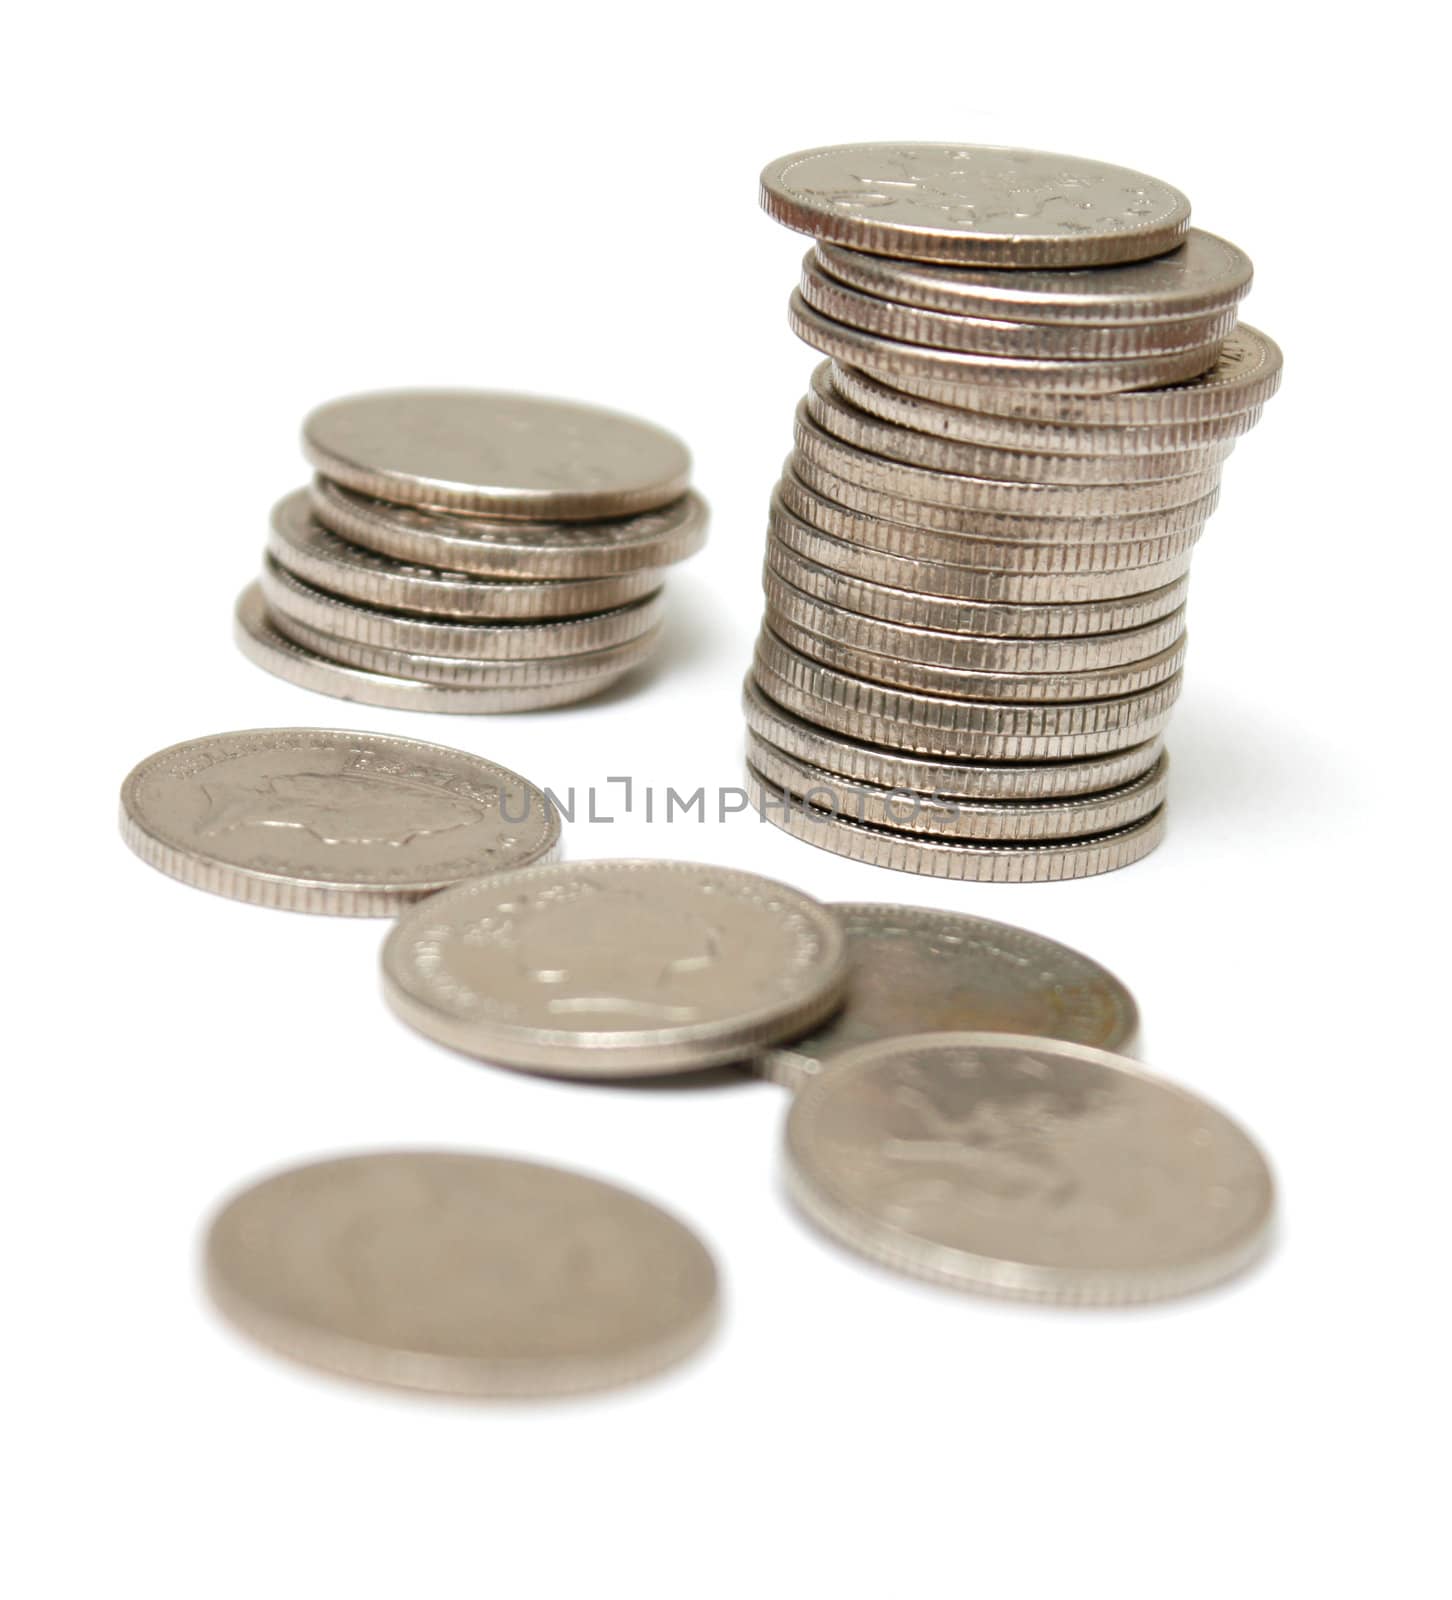 Coins by leeser